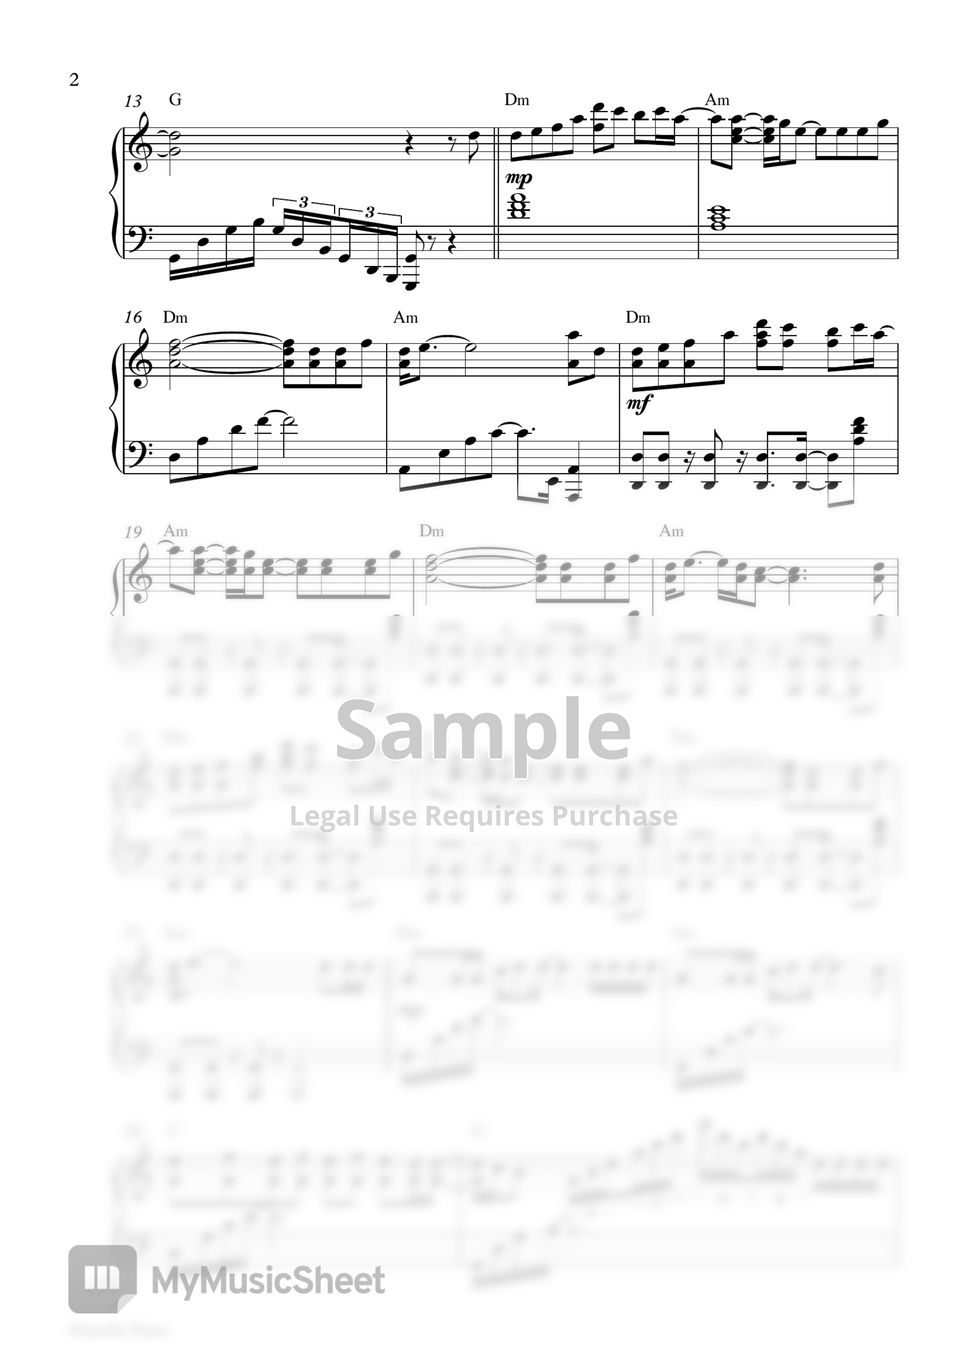 Alan Walker x Conor Maynard - Believers (2 Sheets: in Original Key B Major & Easier Key C Major) by Pianella Piano